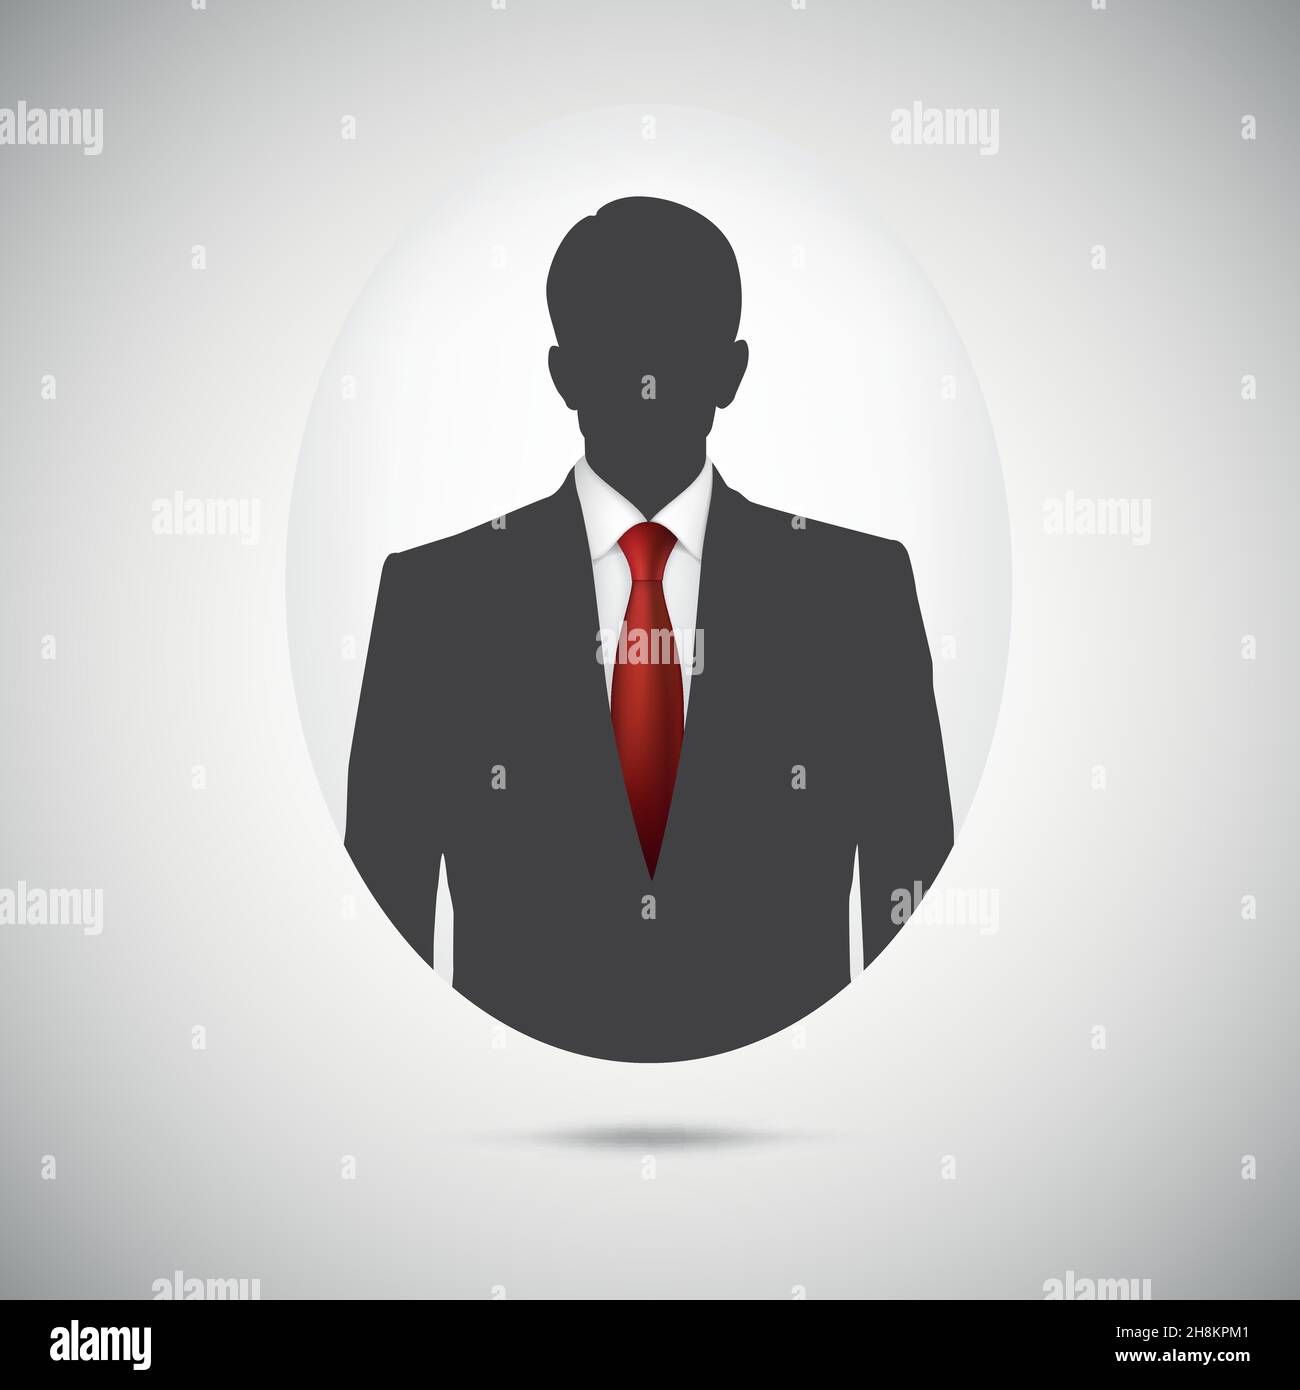 Silhouette uomo. Immagine del profilo con cravatta rossa. Illustrazione Vettoriale